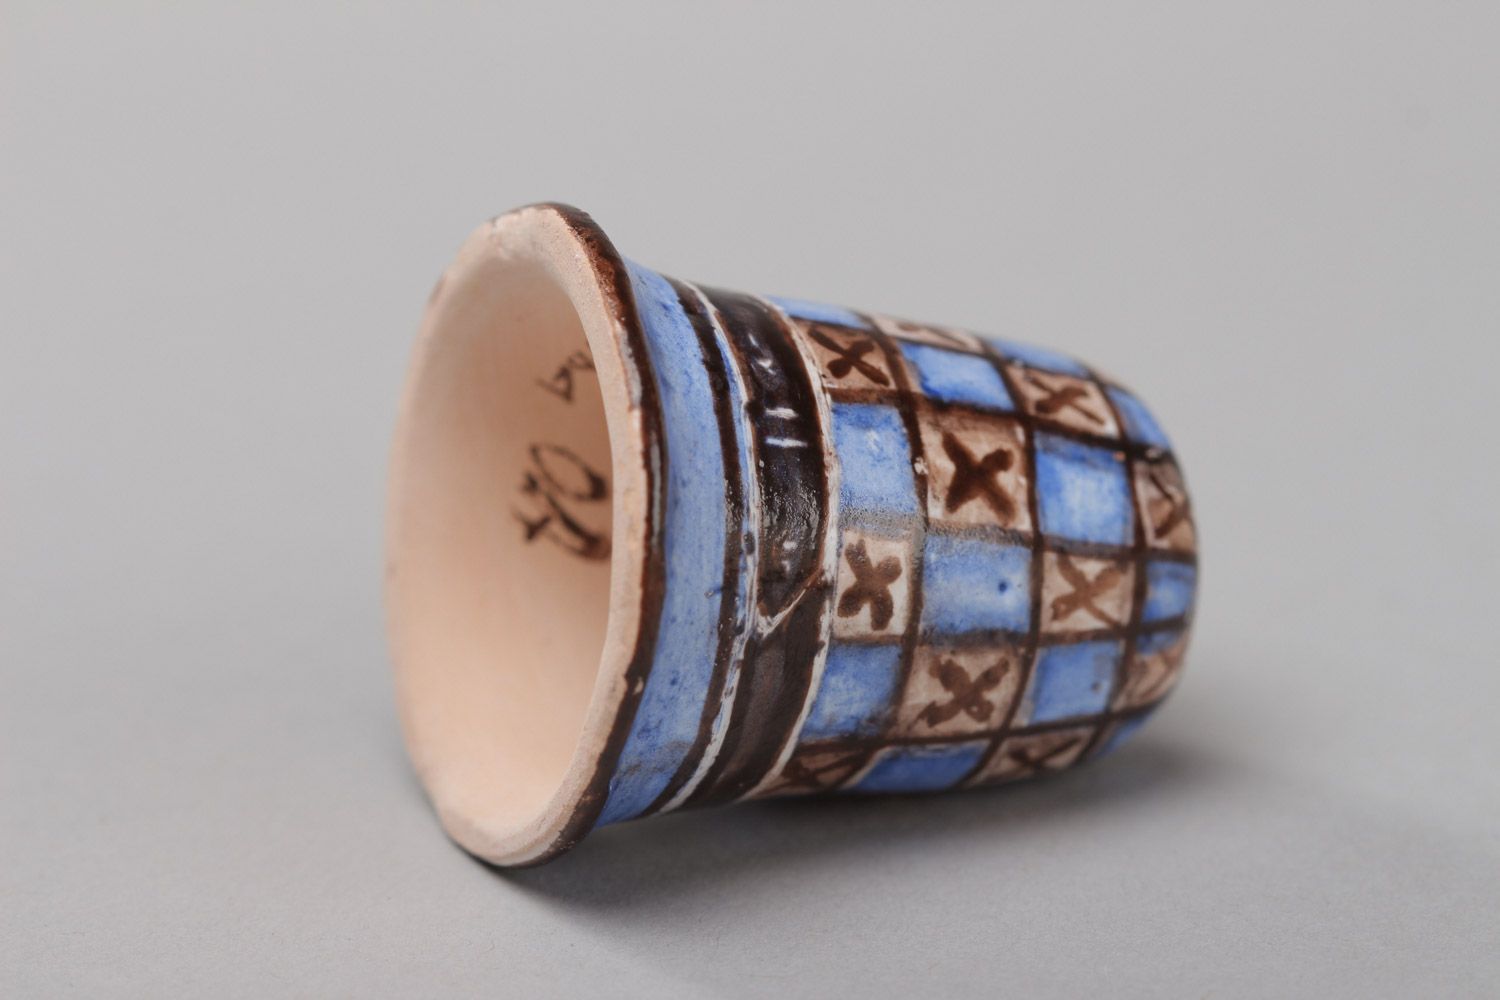 Крошечный наперсток для декора из глины расписной сувенирный ручной работы фото 3